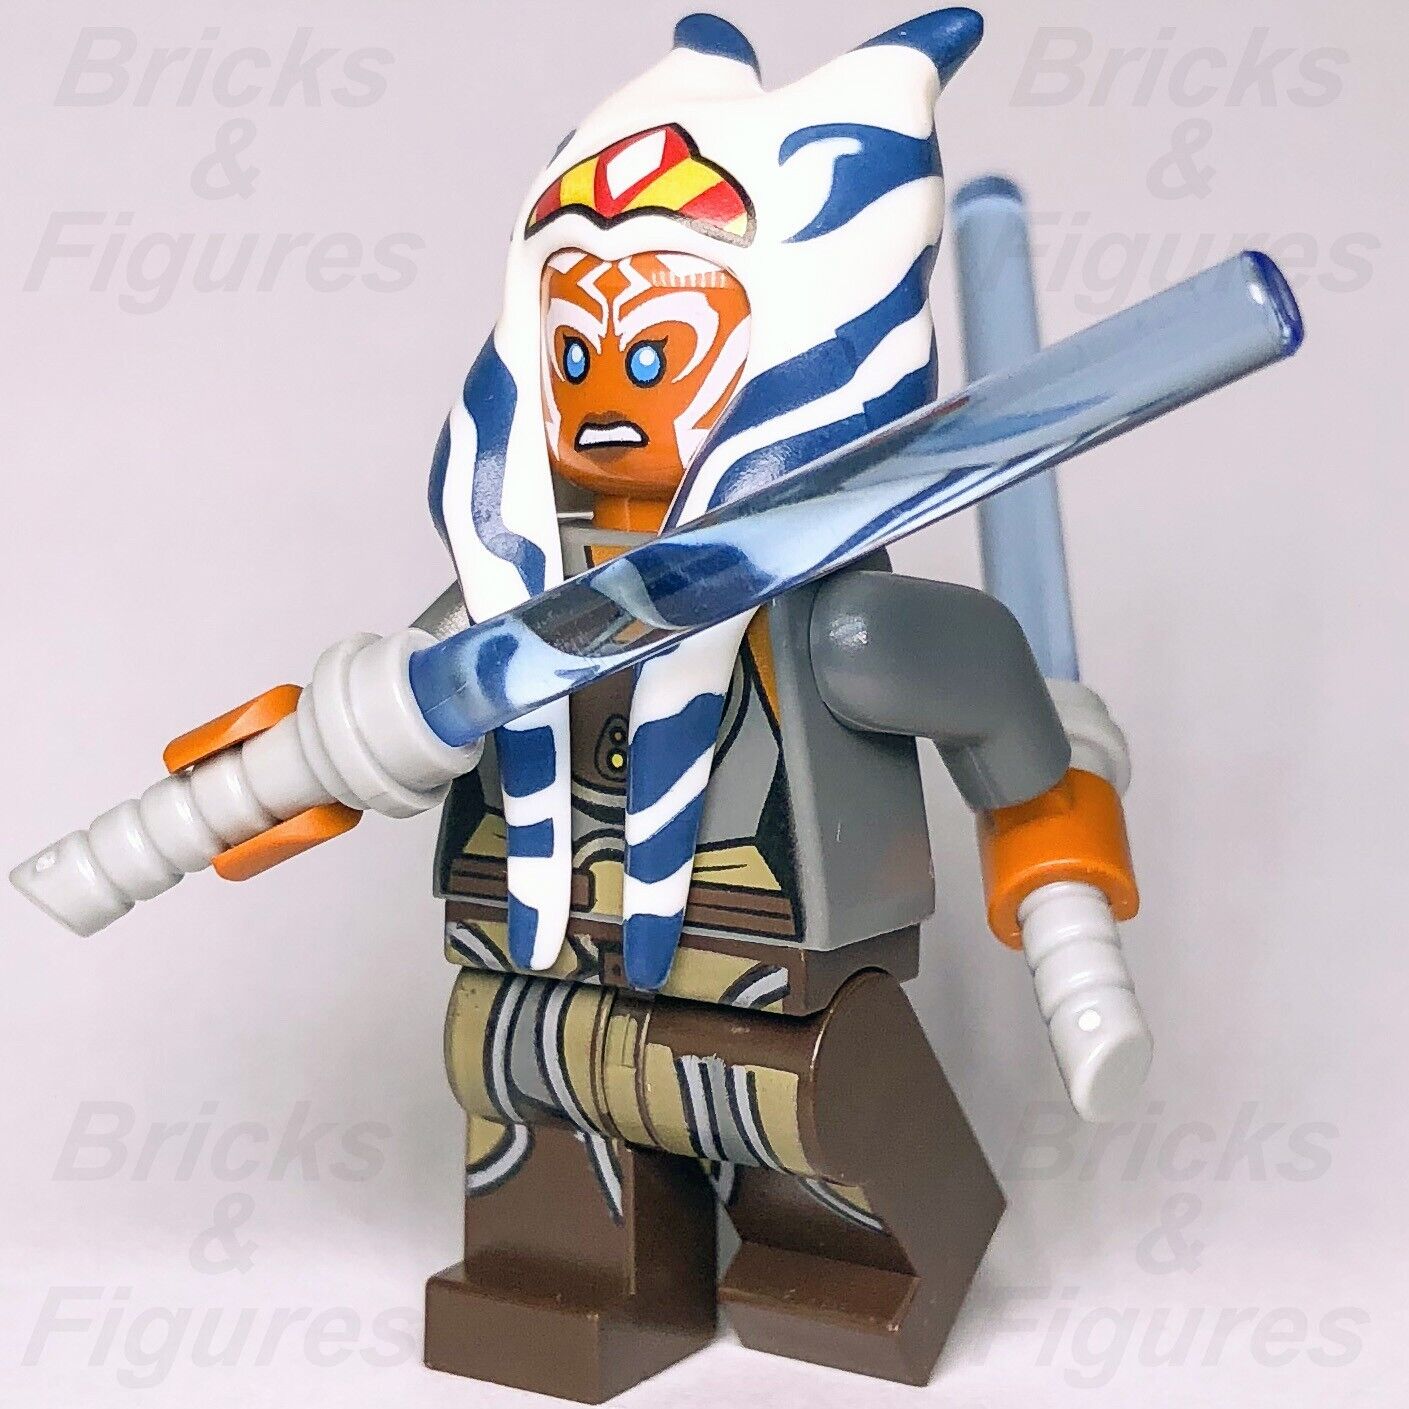 LEGO Star Wars Ahsoka Tano Minifigure Adult Jedi Master Rebels 75158 sw0759 New